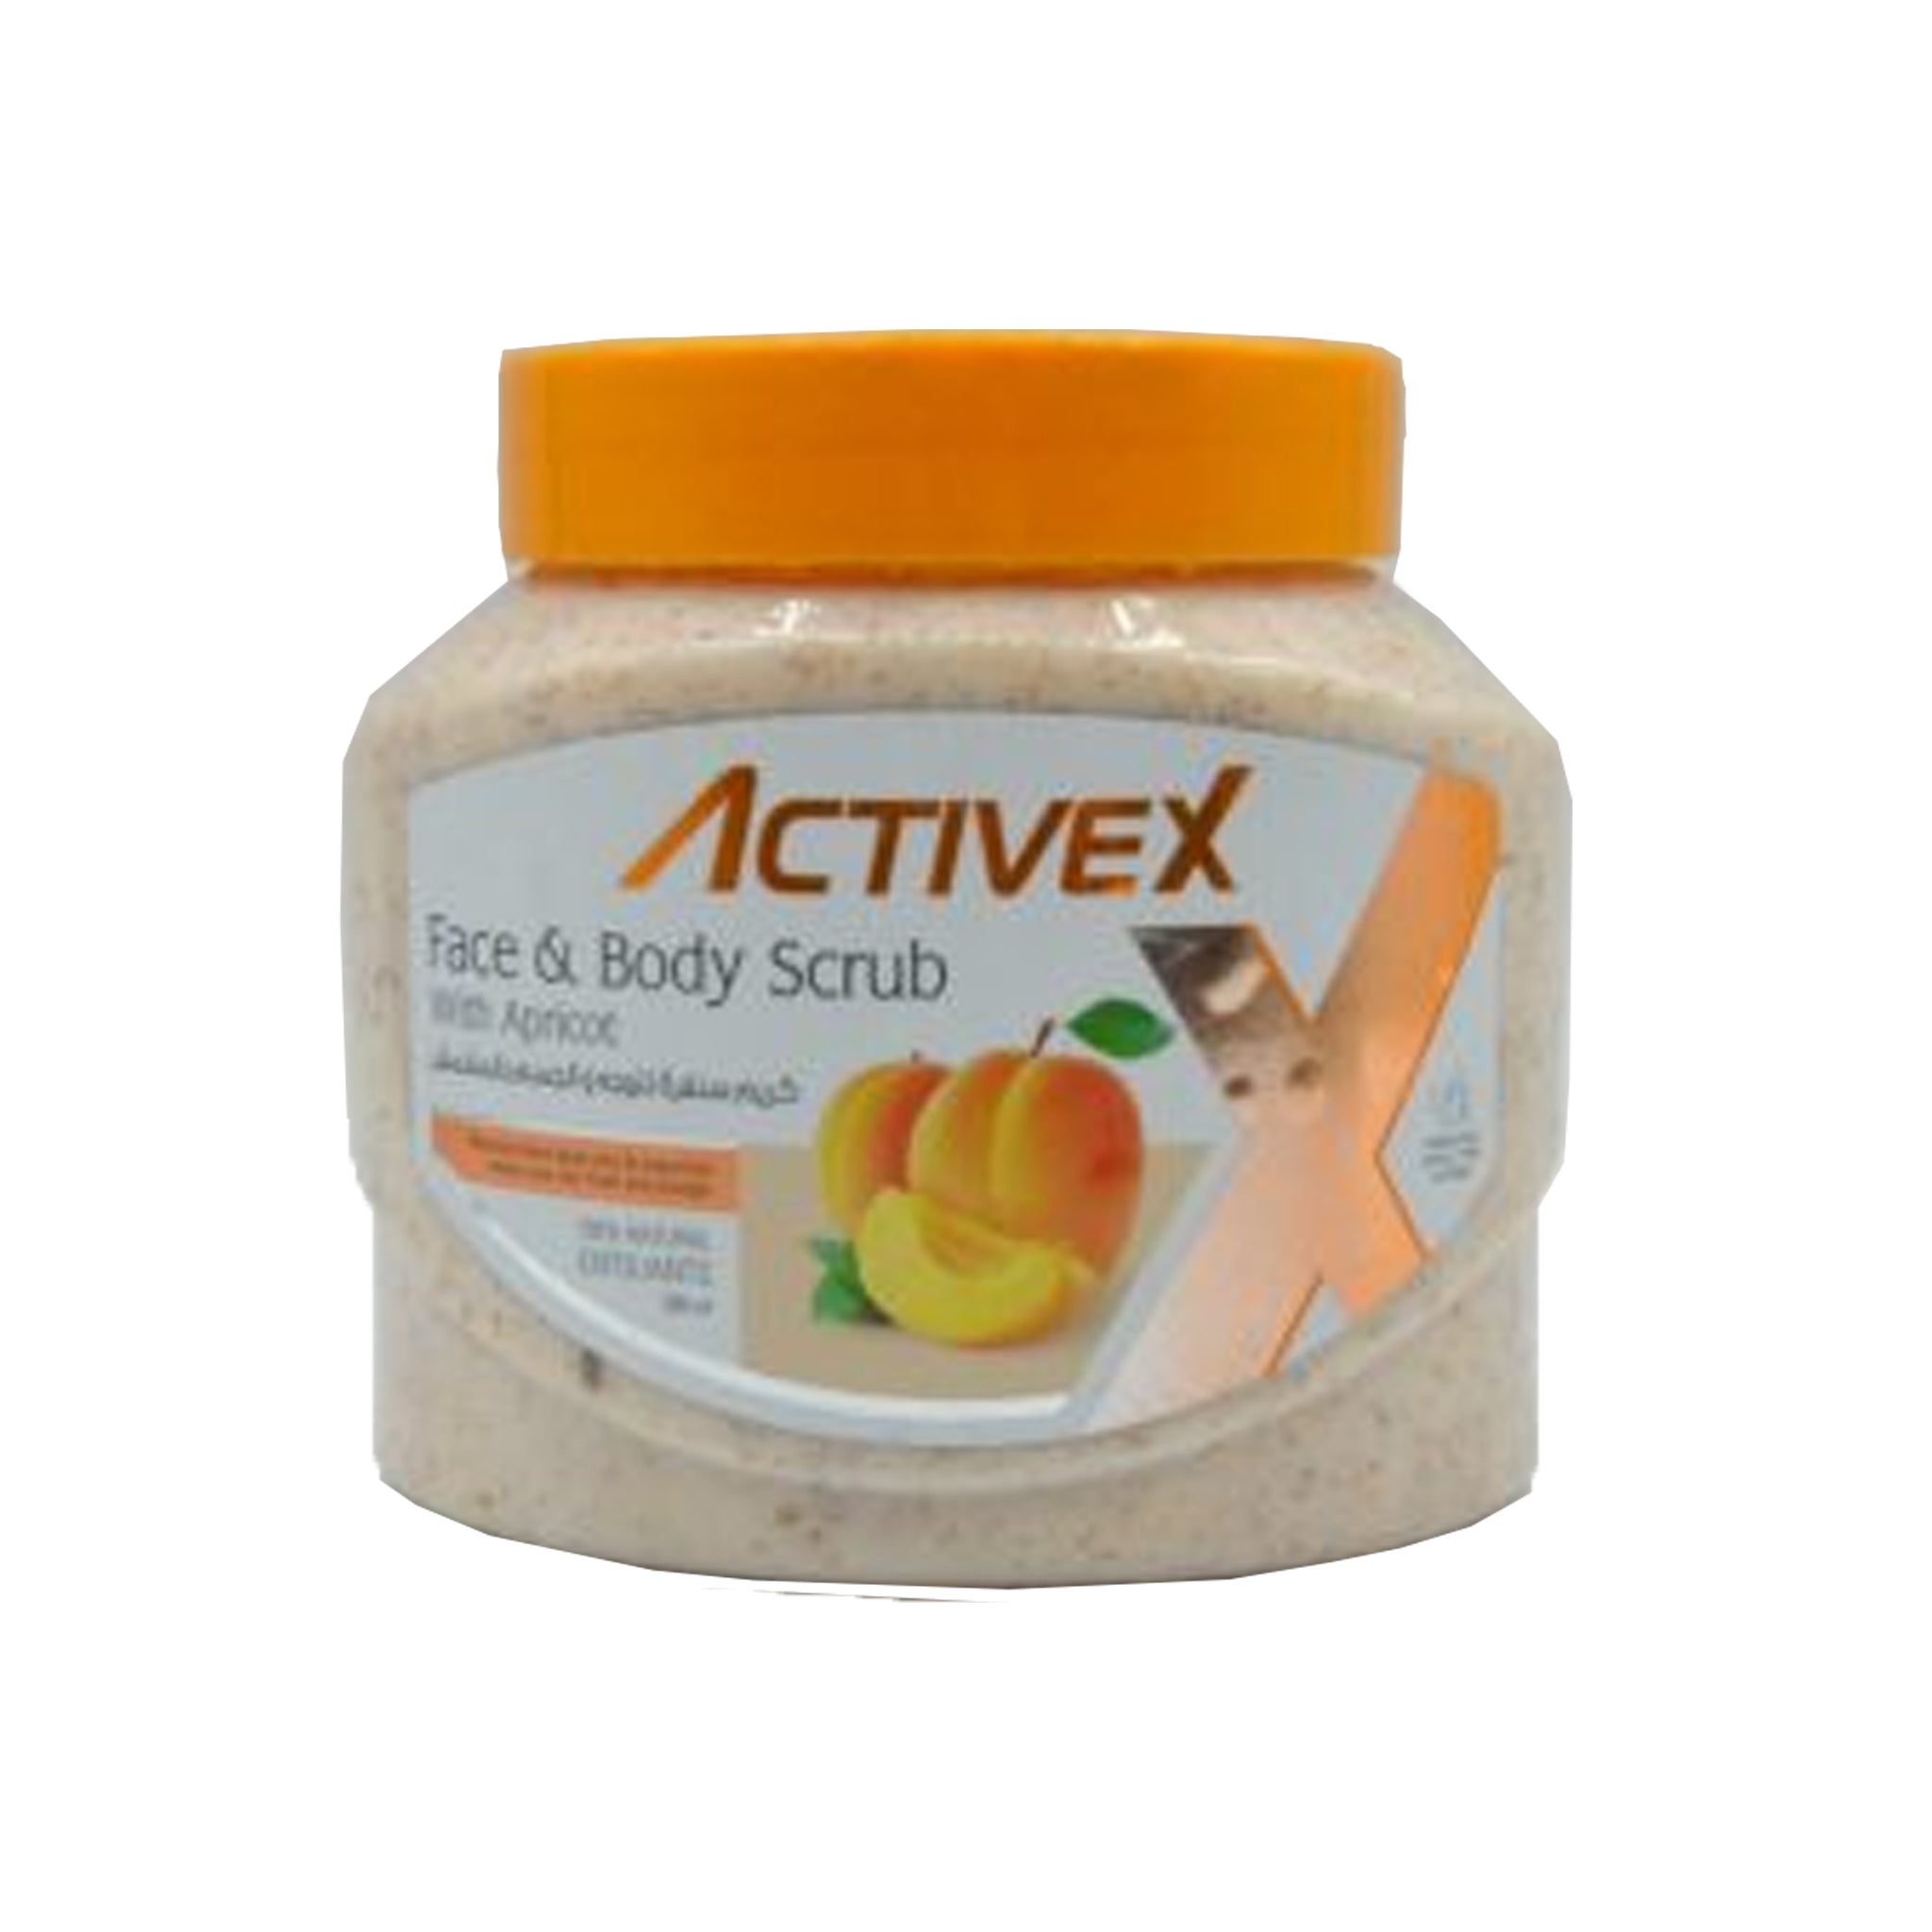 Activex Face & Body Scrub 500 Ml - Apricot